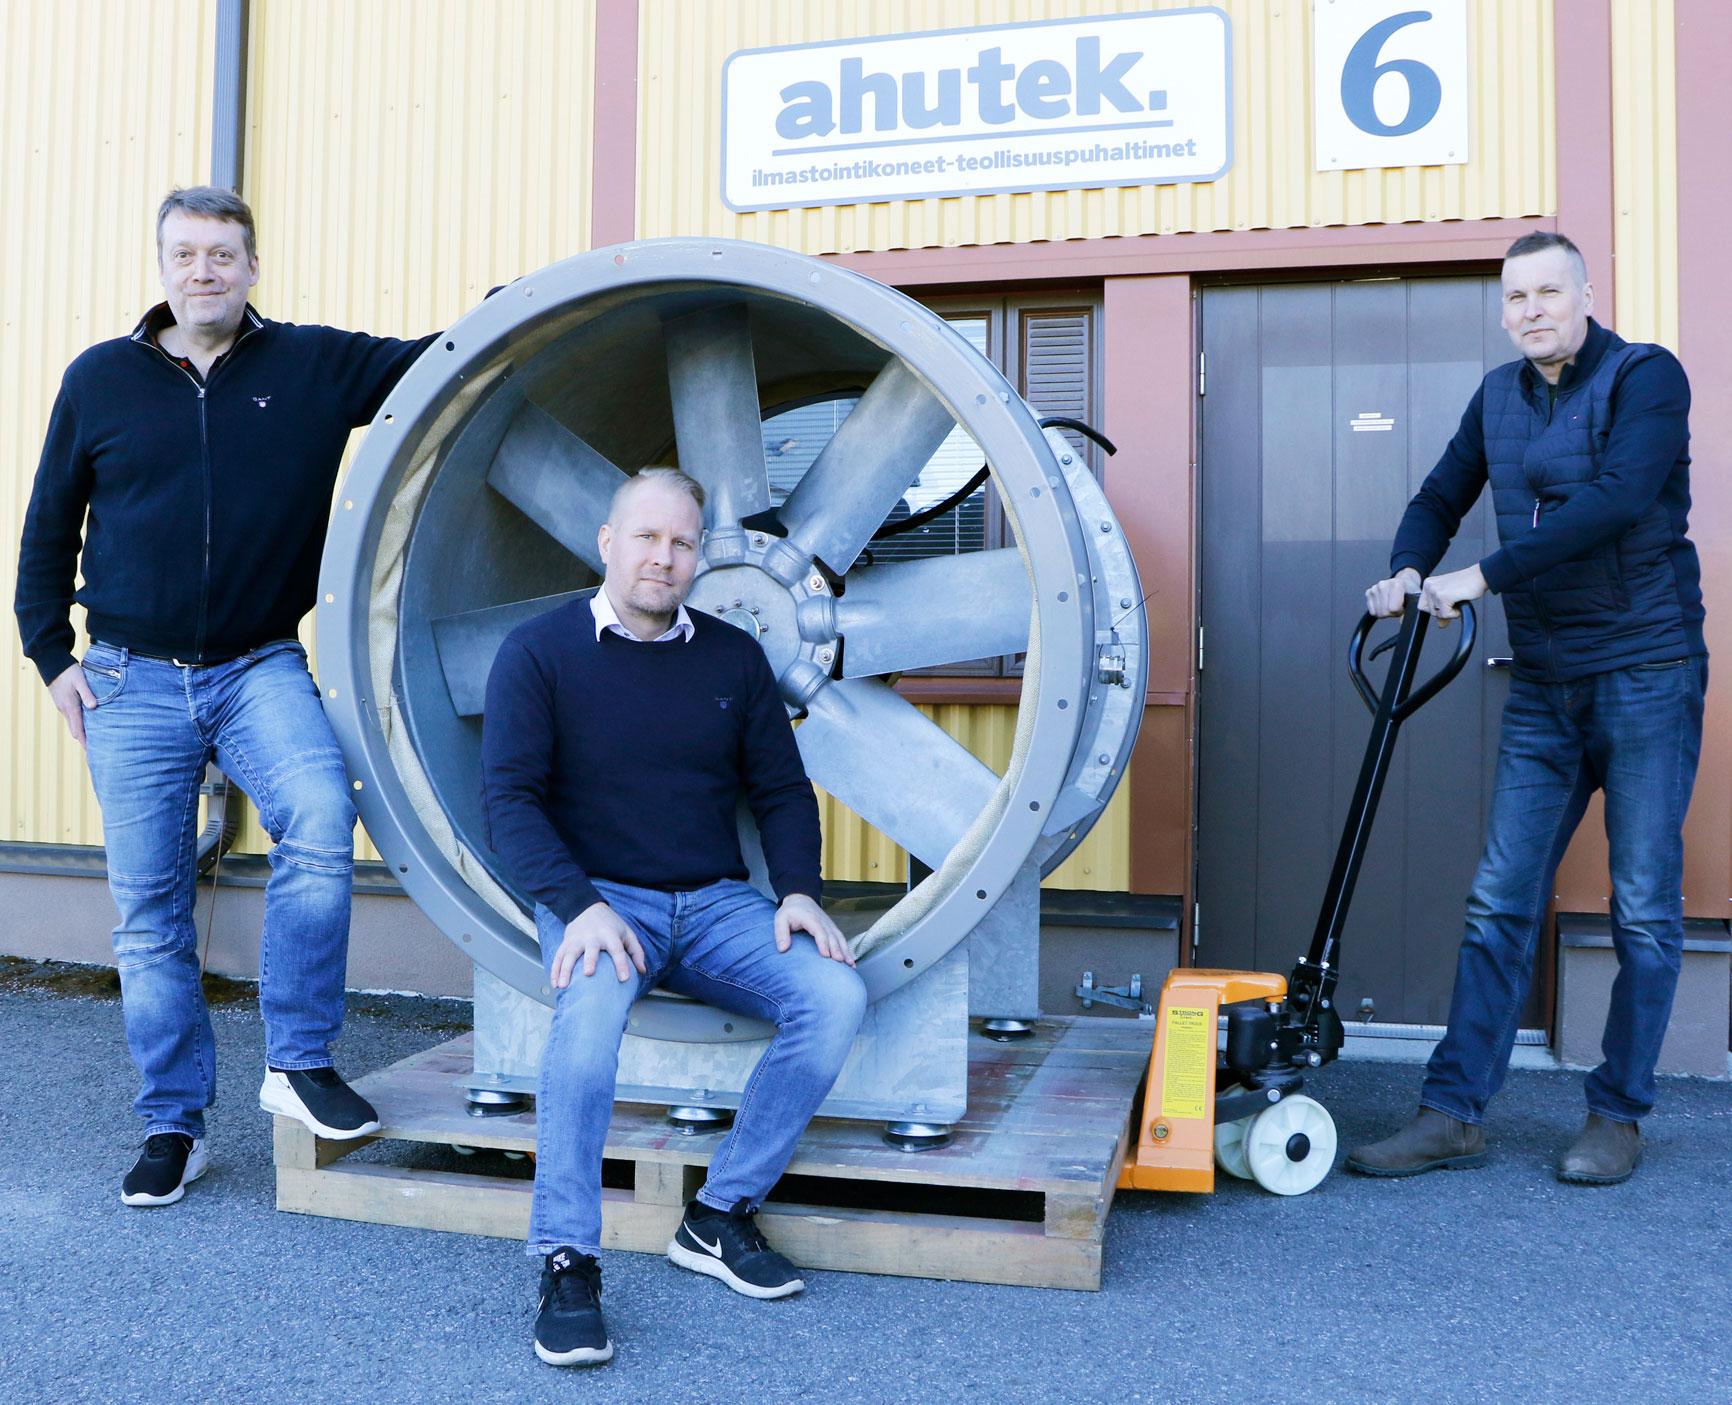 Pekka Lahden, Timo Kakkosen ja Tero Välimaan omistama Ahutek Oy on erikoistunut vaativaan teollisuuskäyttöön tarkoitettujen ilmankäsittelykoneiden ja teollisuuspuhaltimien myyntiin ja markkinointiin.